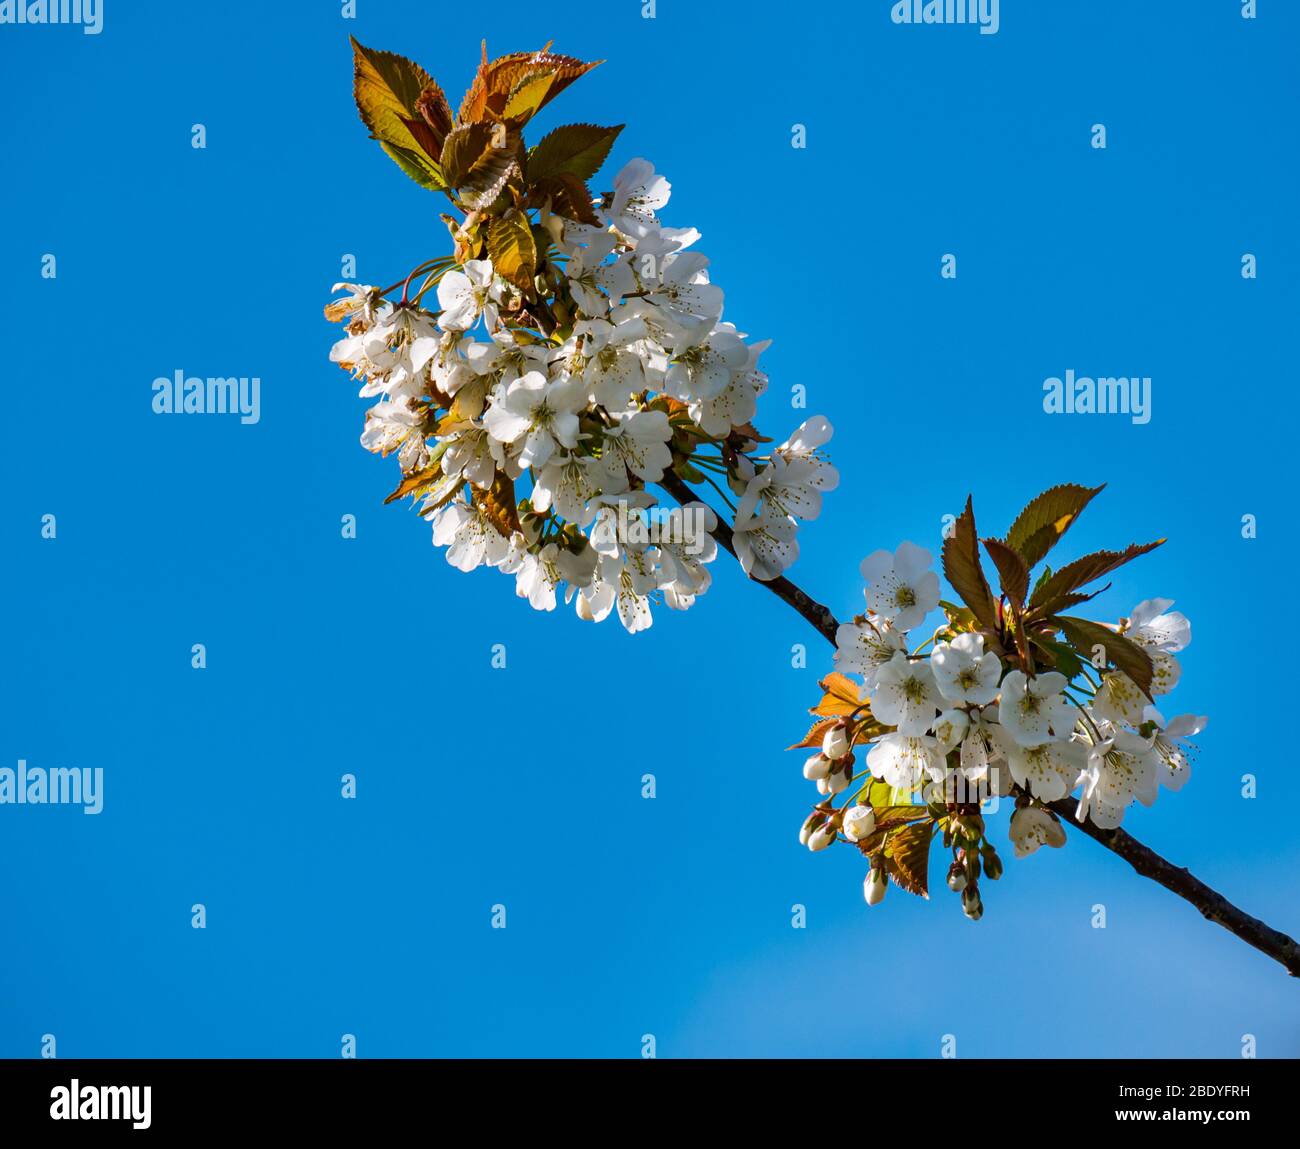 Gros plan sur la fleur de cerisier blanche Spring contre le ciel bleu profond, Ecosse, Royaume-Uni Banque D'Images